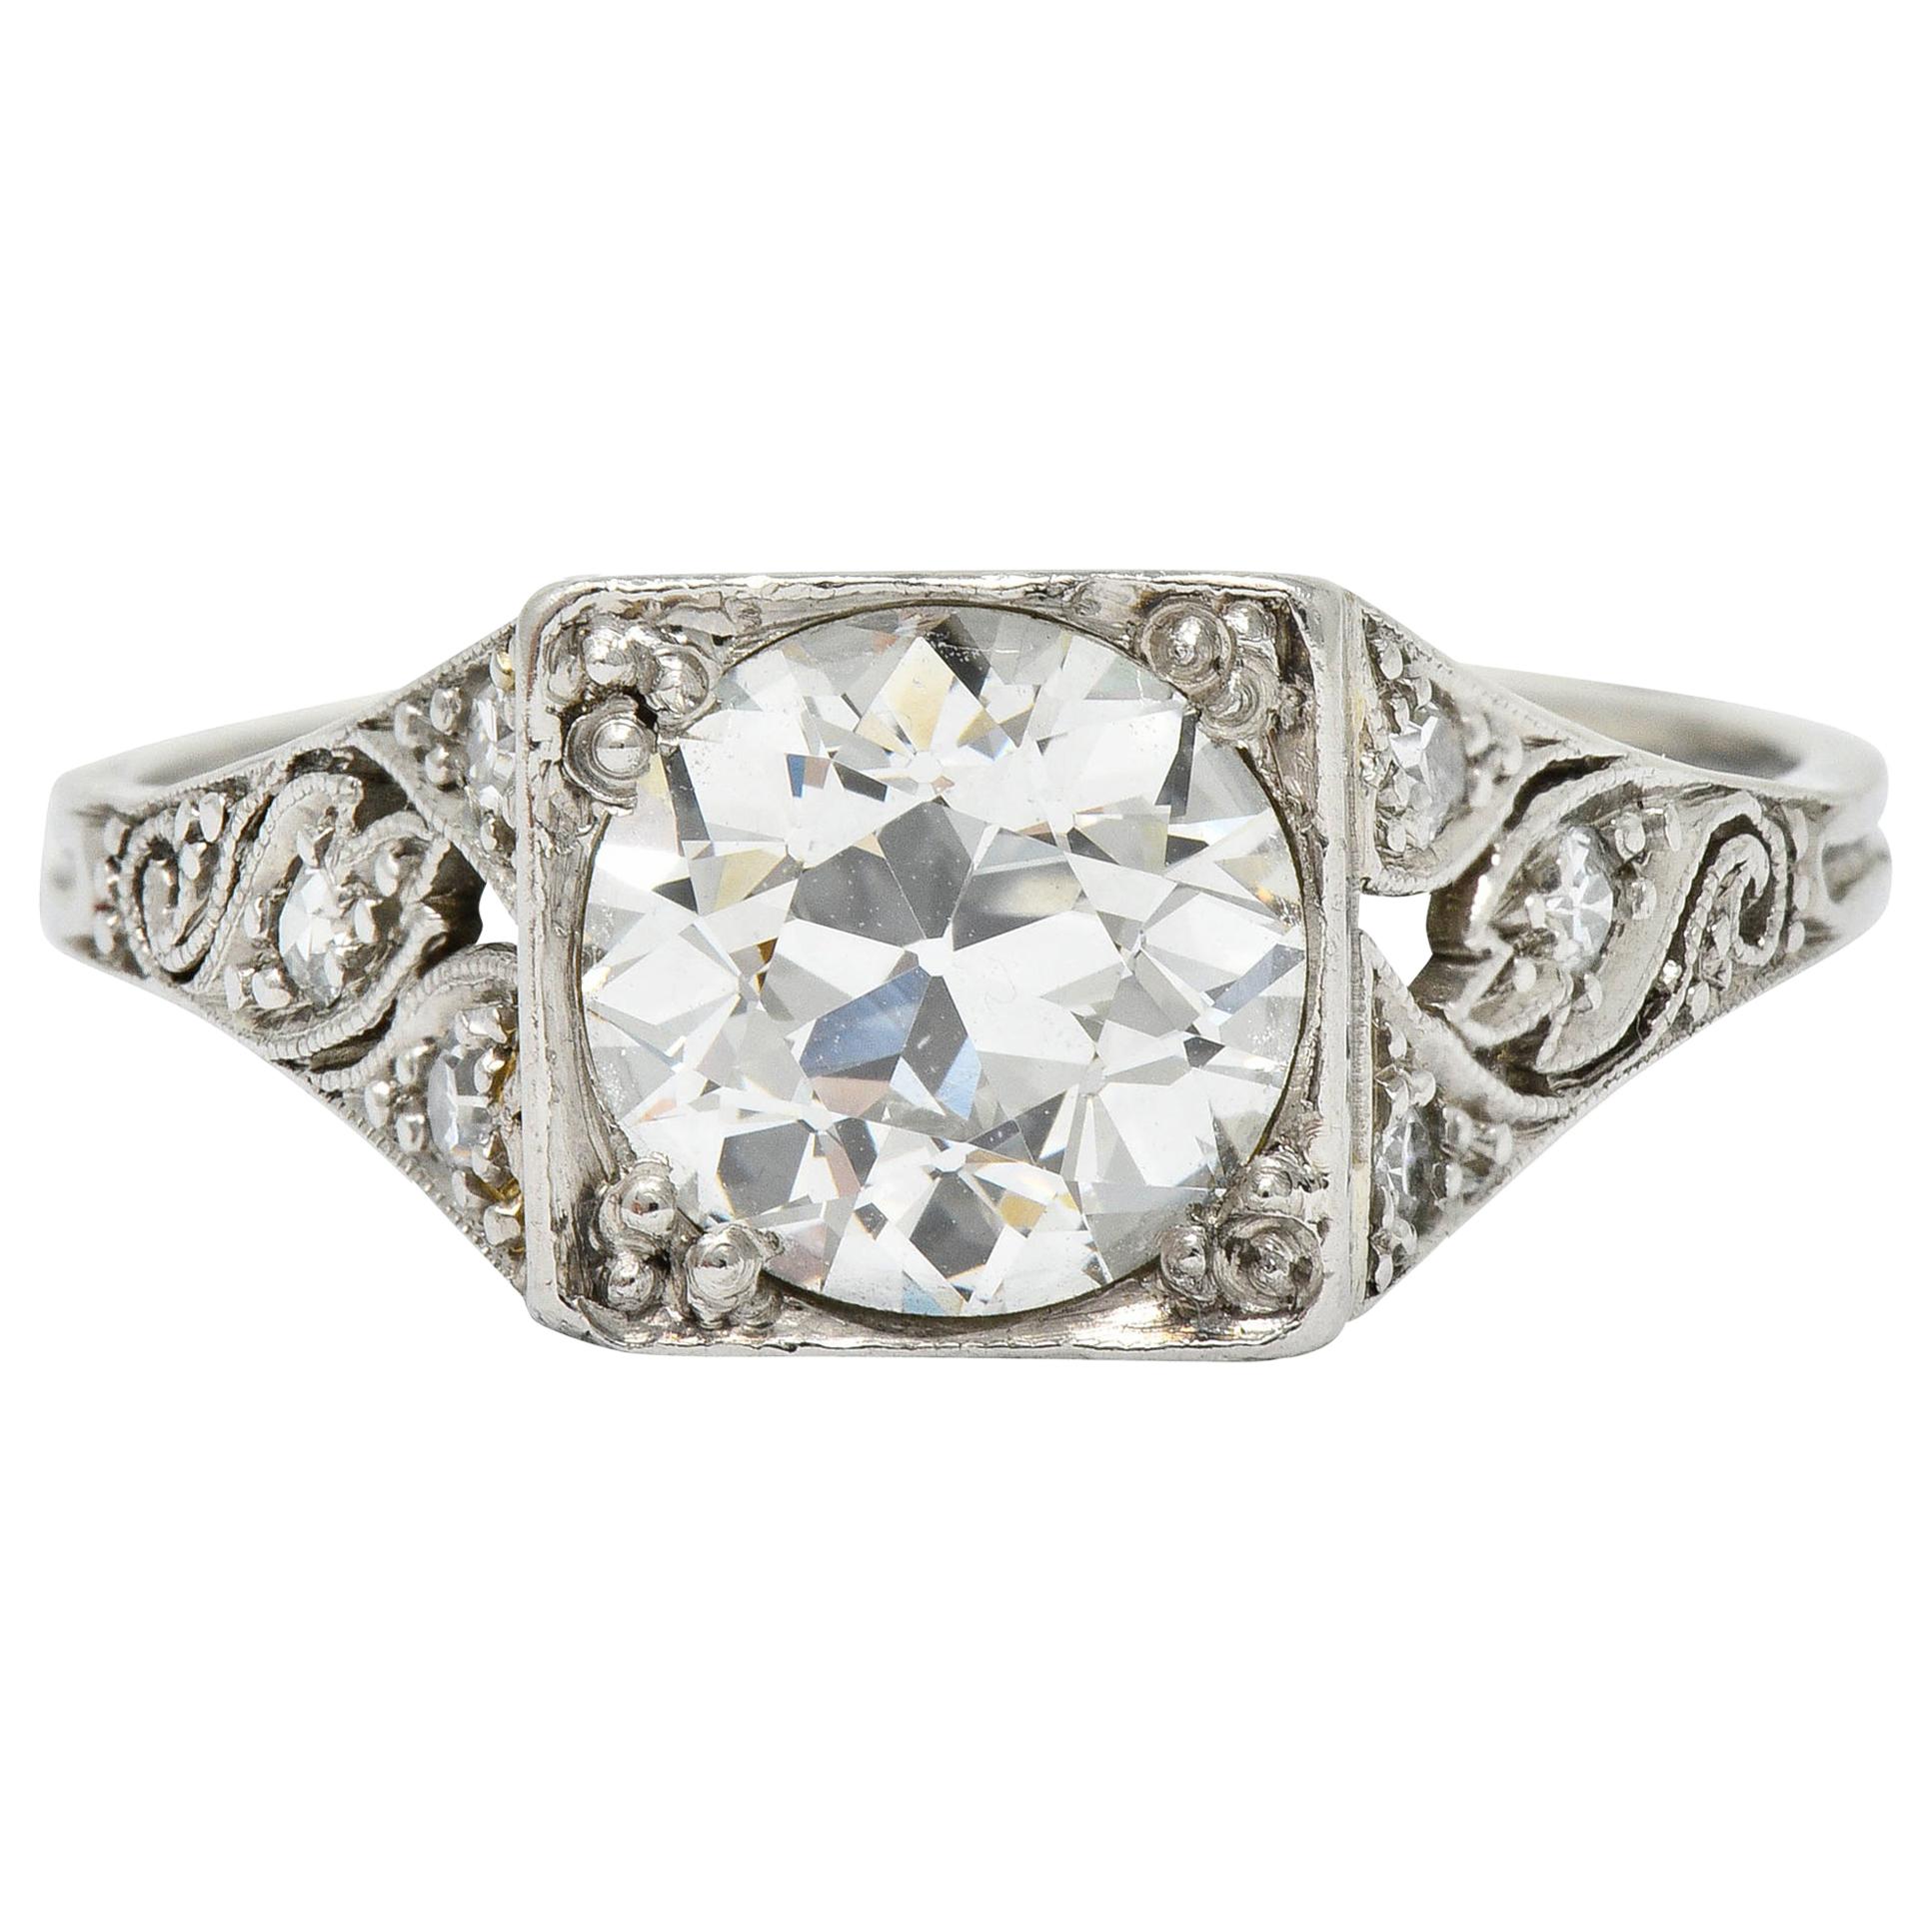 Late Edwardian 1.77 Carat Diamond Platinum Filigree Engagement Ring, circa 1915